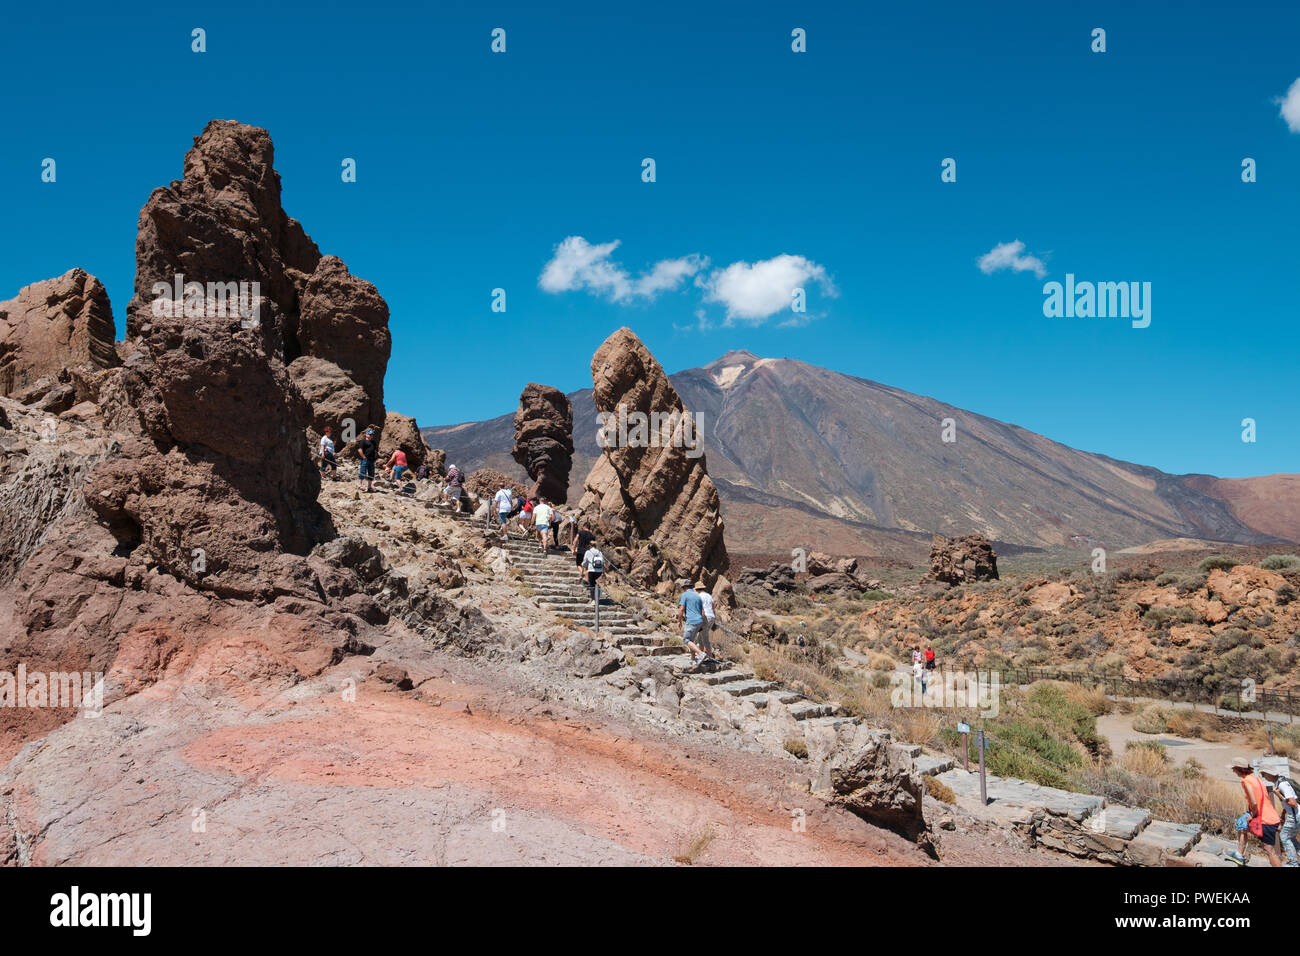 Tenerife, Isole Canarie, Spagna - Settembre 2018: turisti al Roque Cinchado roccia sul monte Teide (Pico delTeide) Parco Nazionale, Tenerife Spagna Foto Stock